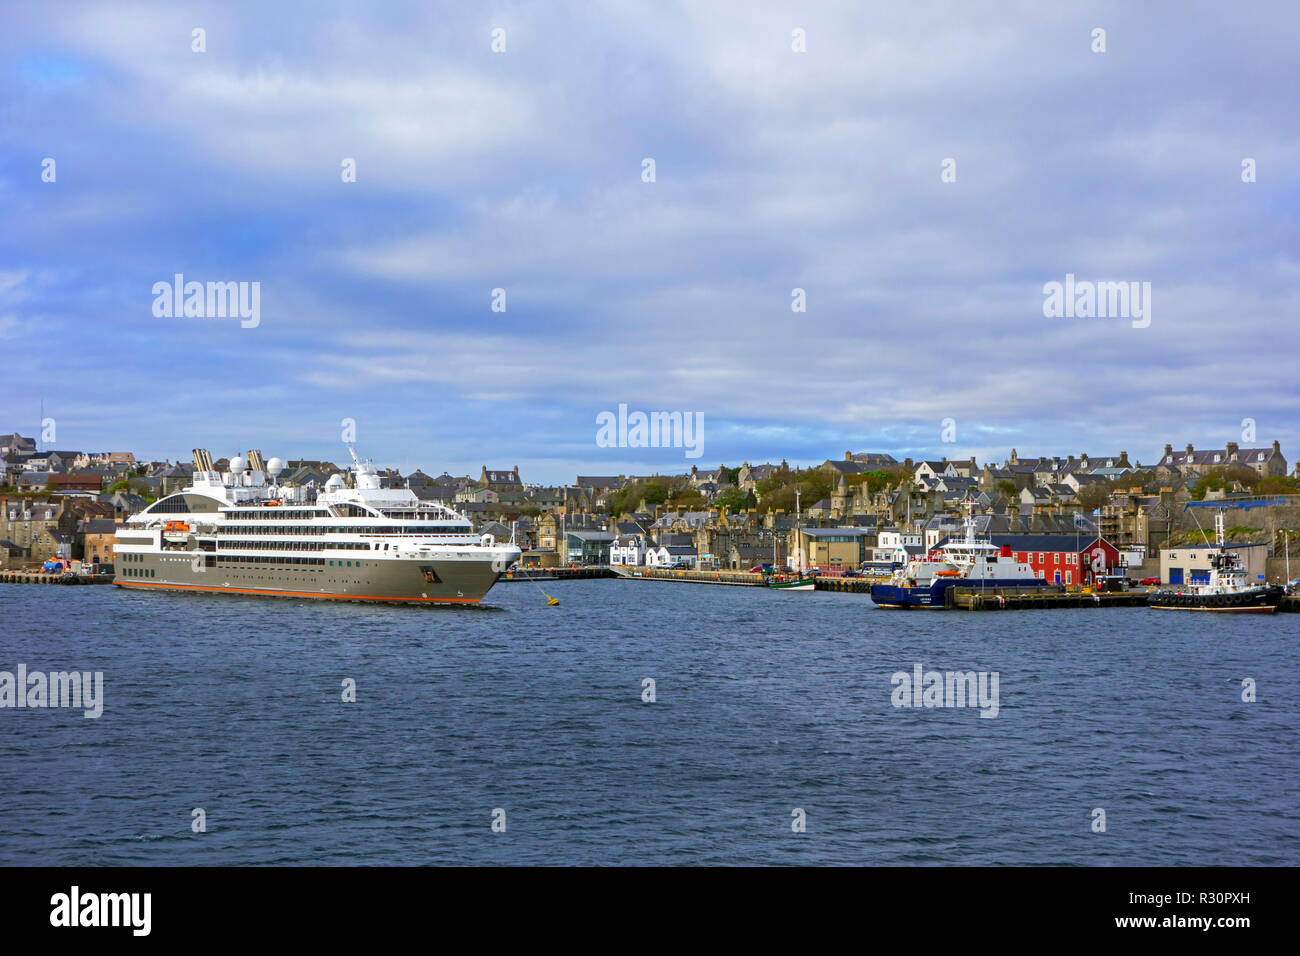 Le boreale, nave da crociera il francese cruise line società Compagnie du Ponant a Lerwick Harbour, isole Shetland, Scotland, Regno Unito Foto Stock